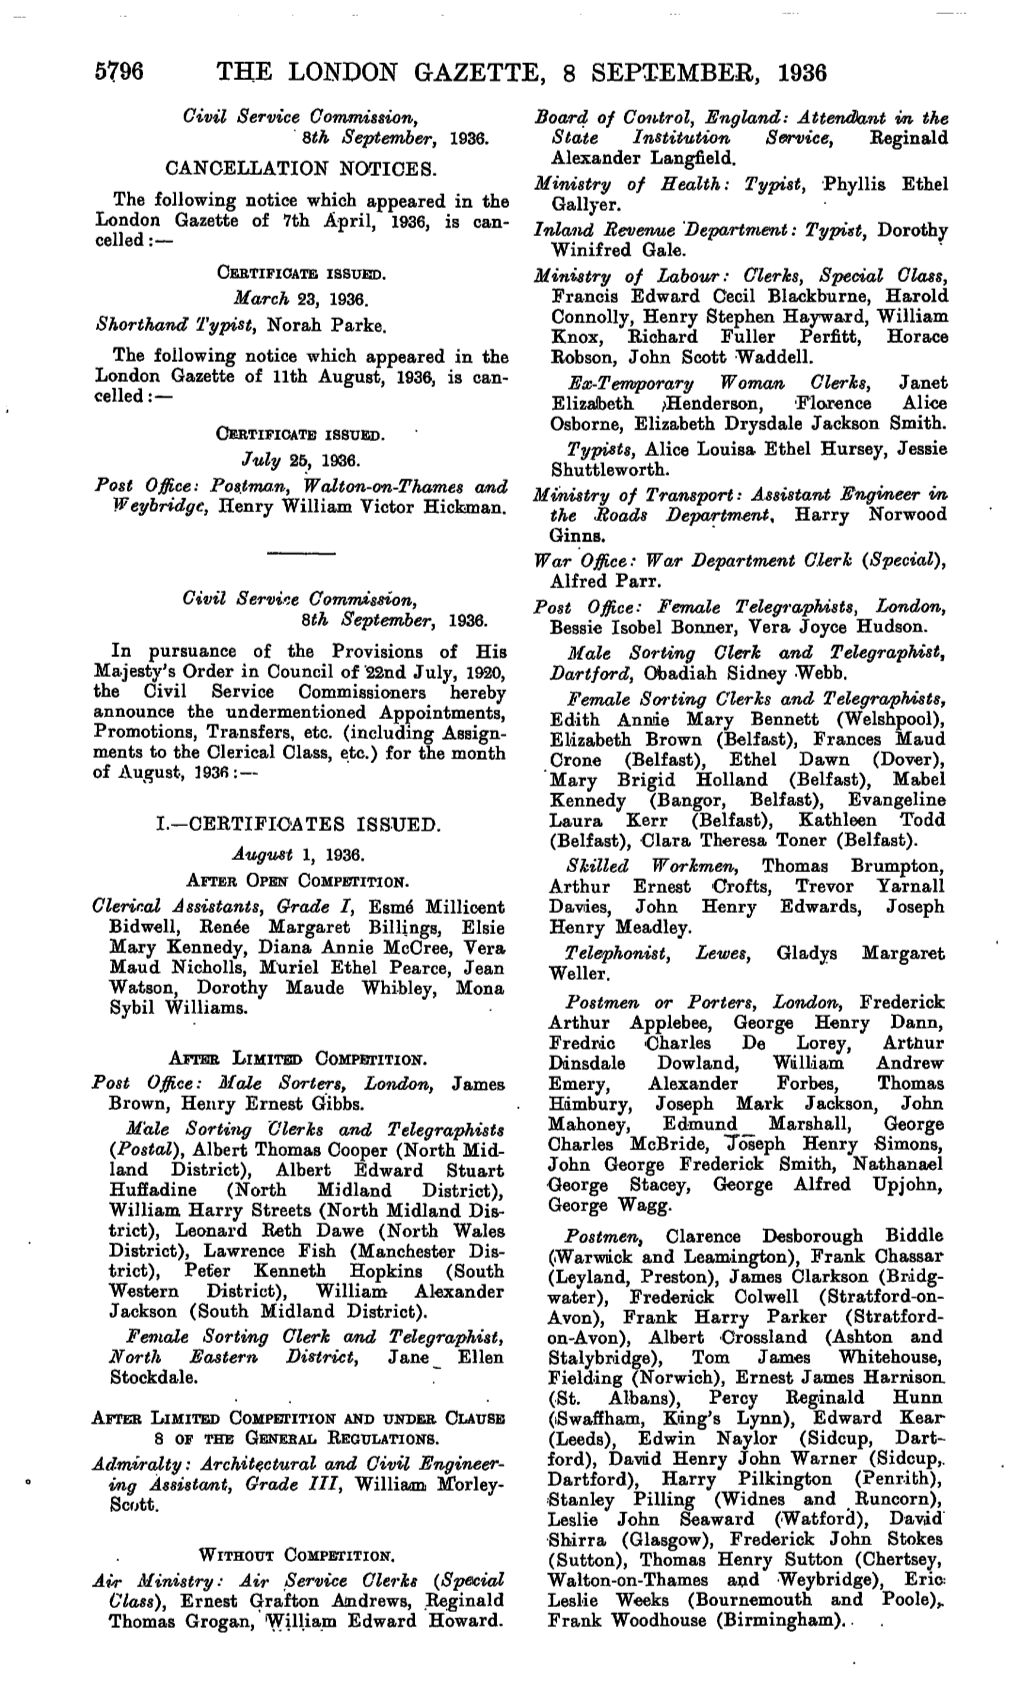 5796 the London Gazette, 8 September, 1936